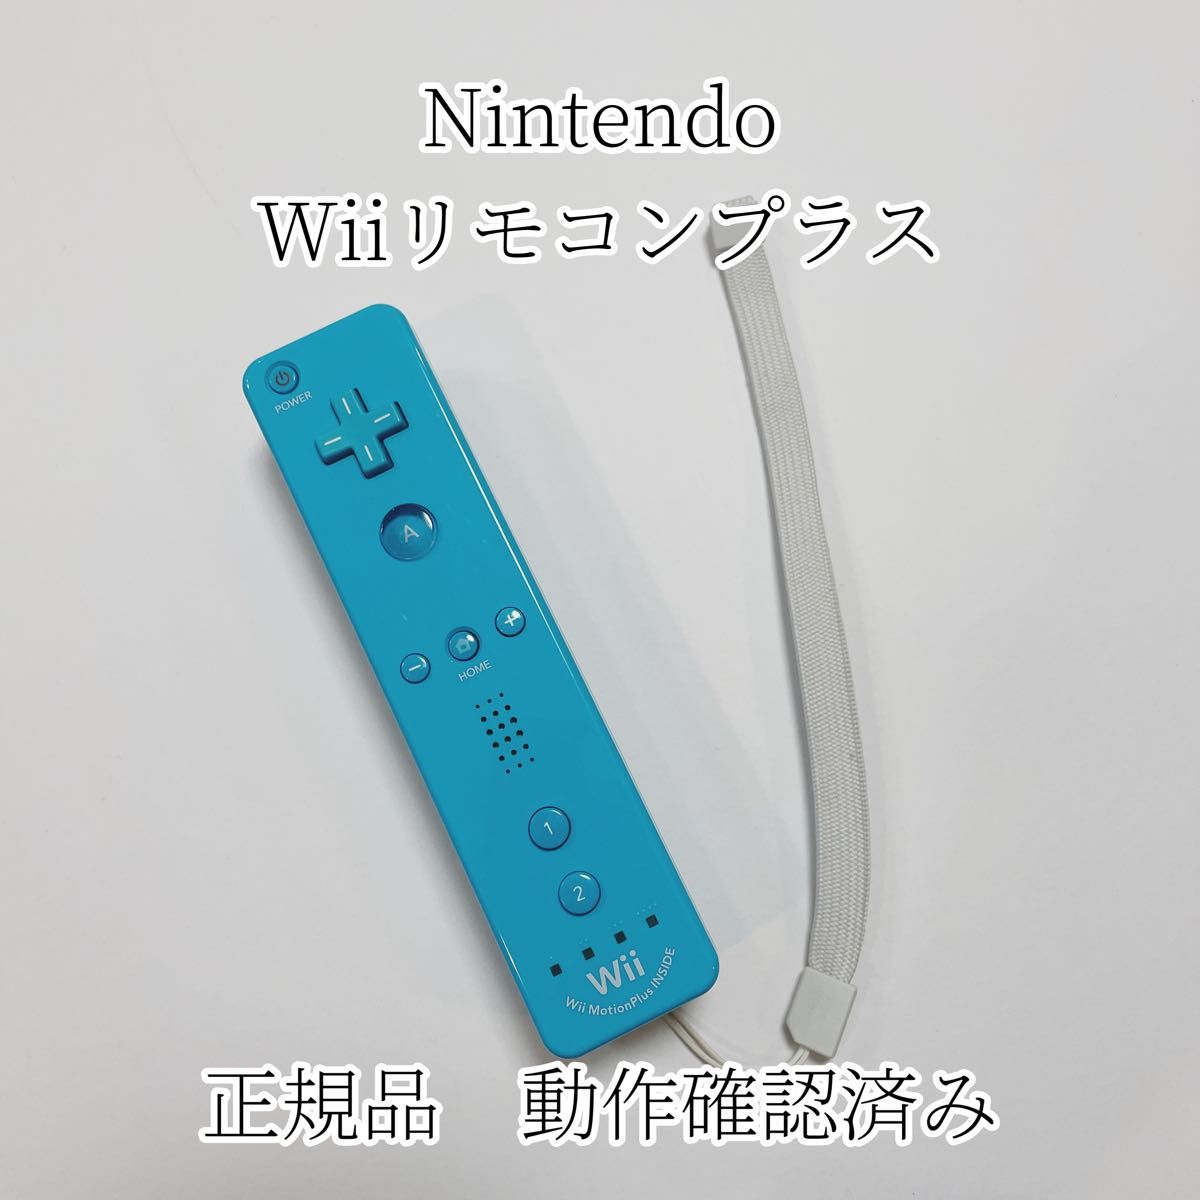 【正規品】WiiU Wiiリモコンプラス ストラップ付き 送料無料 ブルー